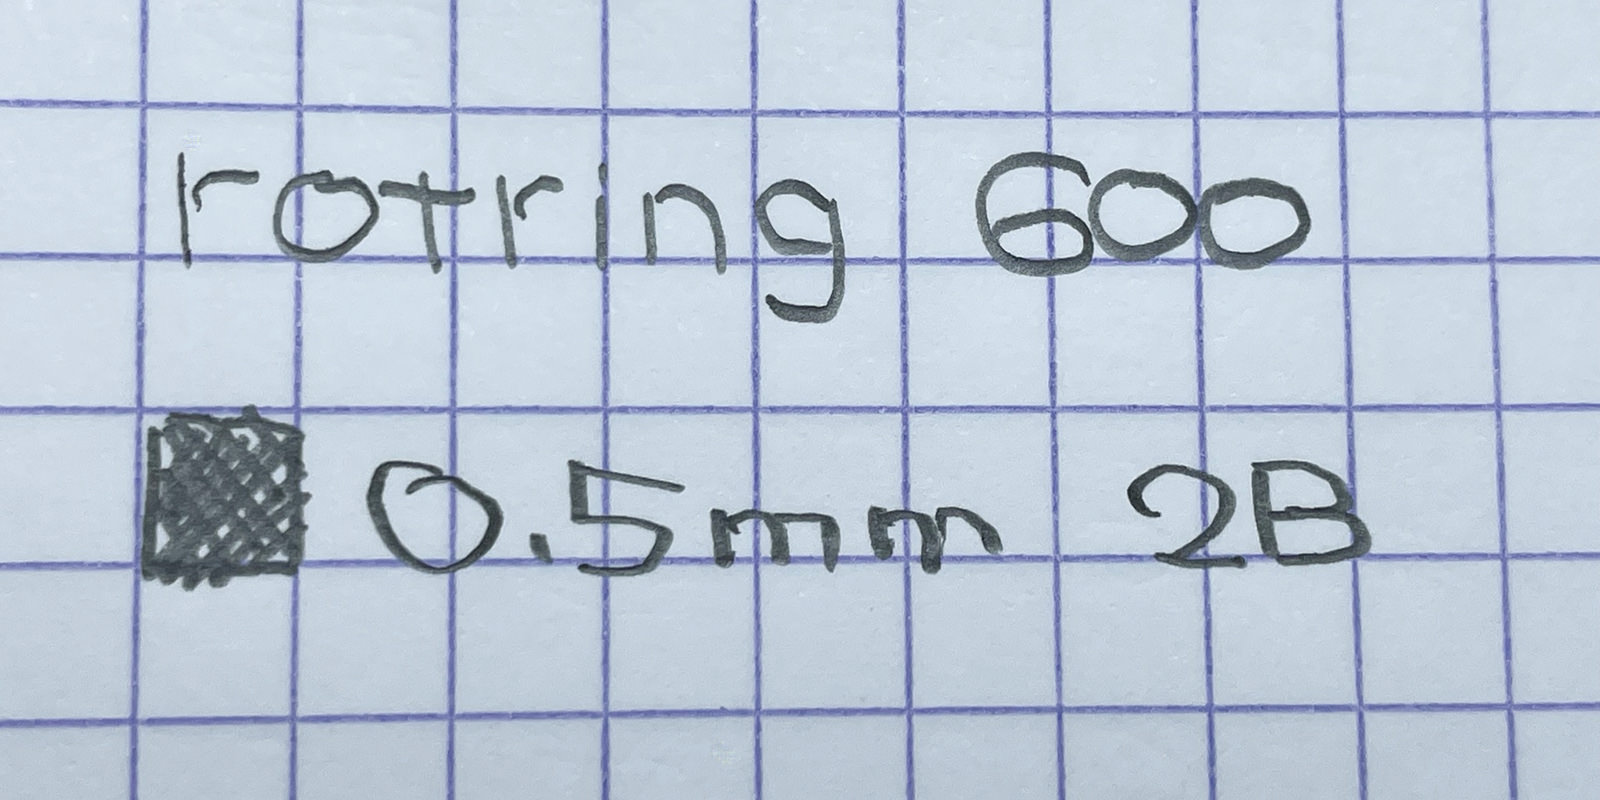 「rotring 600 05」メカニカルペンシルで書いてみた